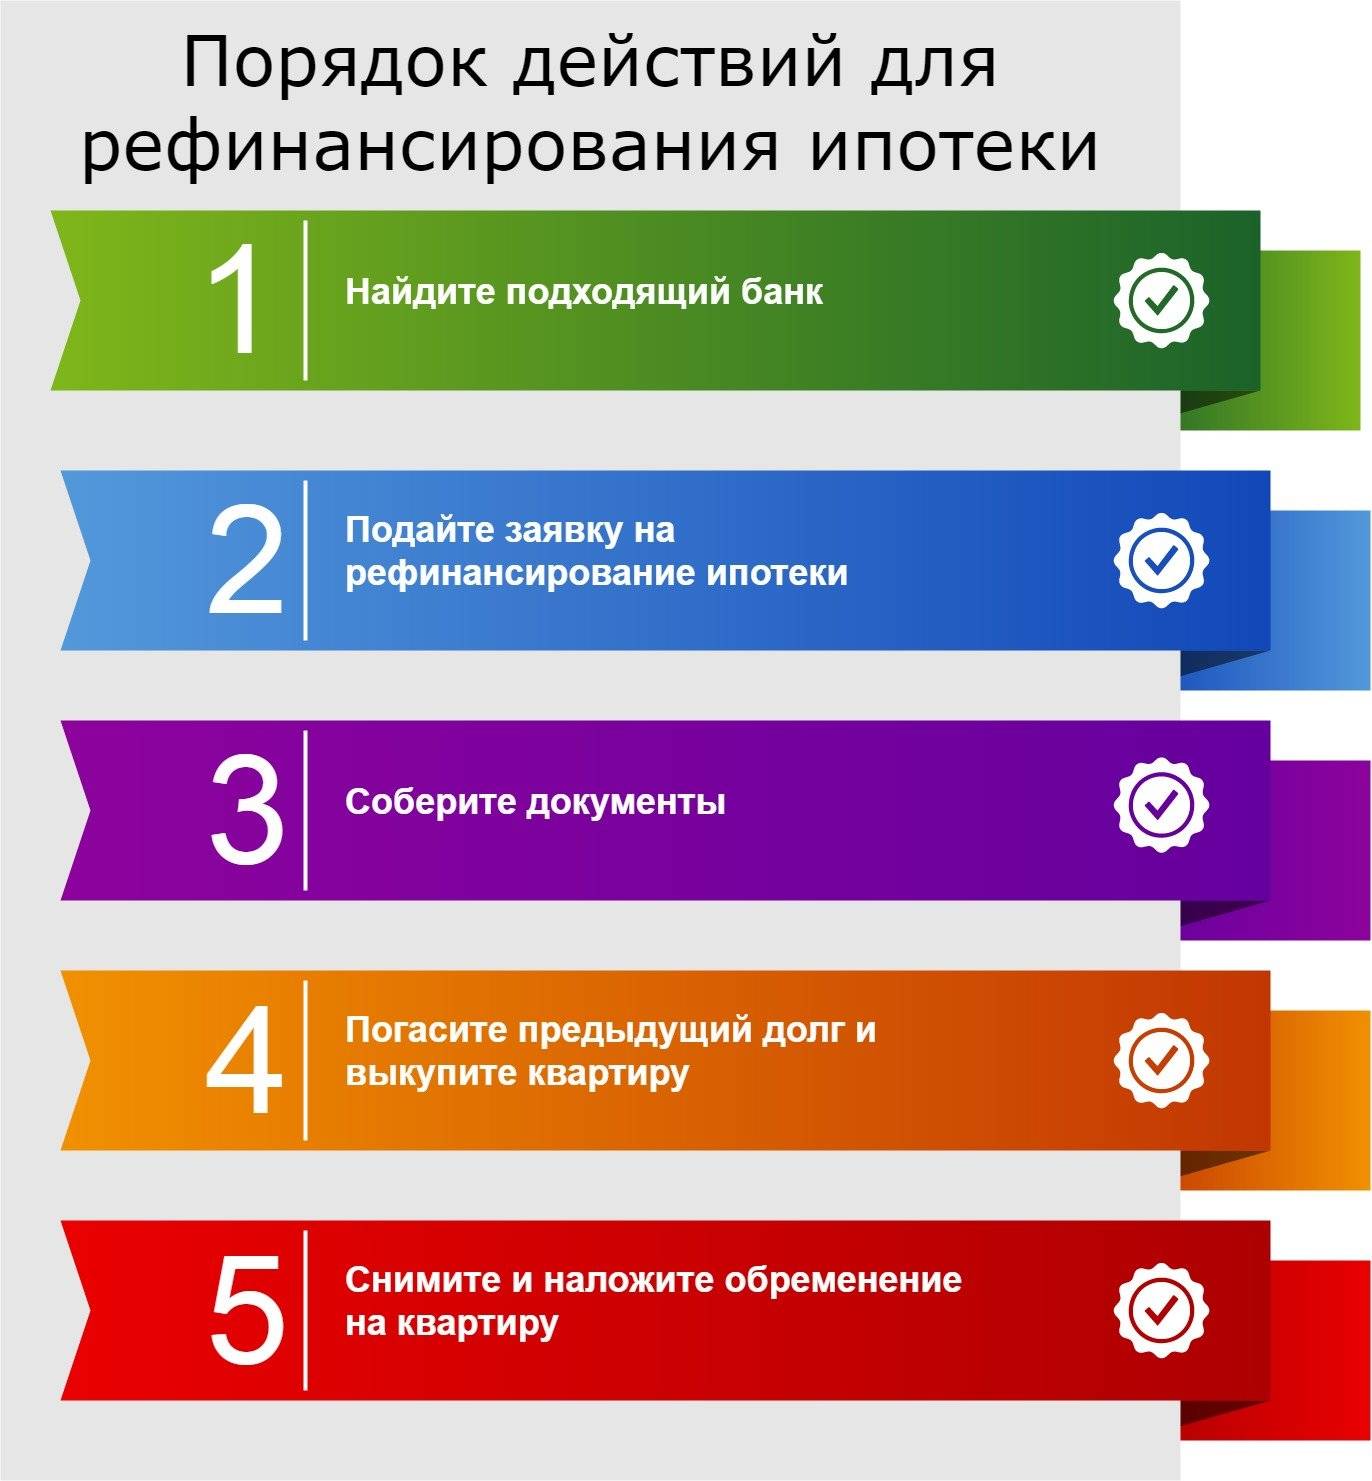 Рефинансирование ипотеки 2022 в других банках - лучшие предложения по ставкам | банки.ру